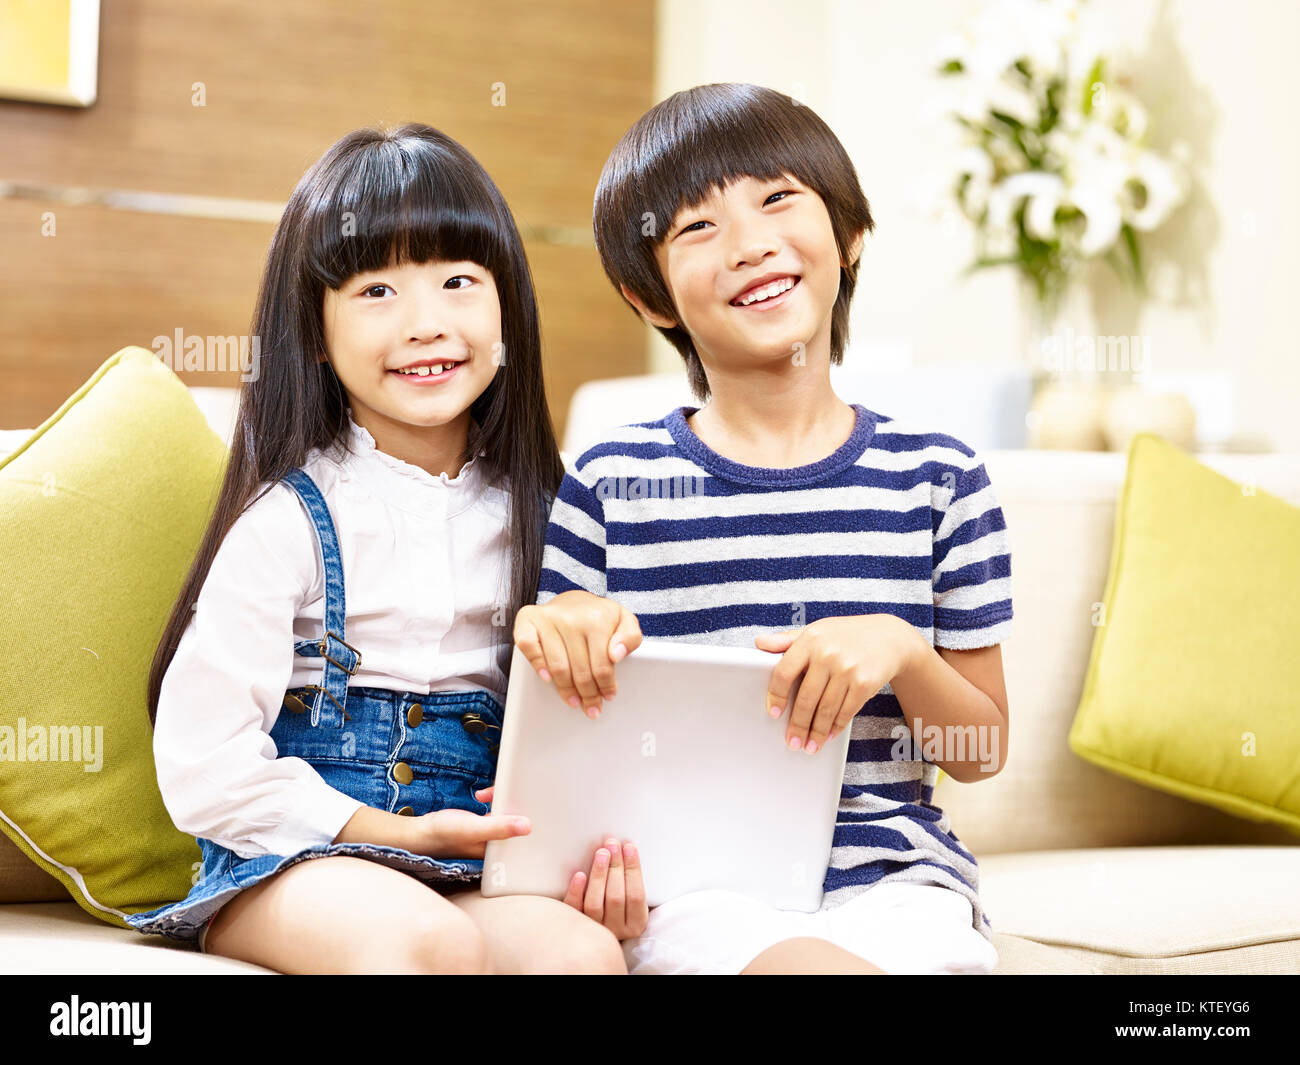 Deux enfants asiatiques mignon petit garçon et petite fille assise sur la table holding digital tablet smiling at camera Banque D'Images